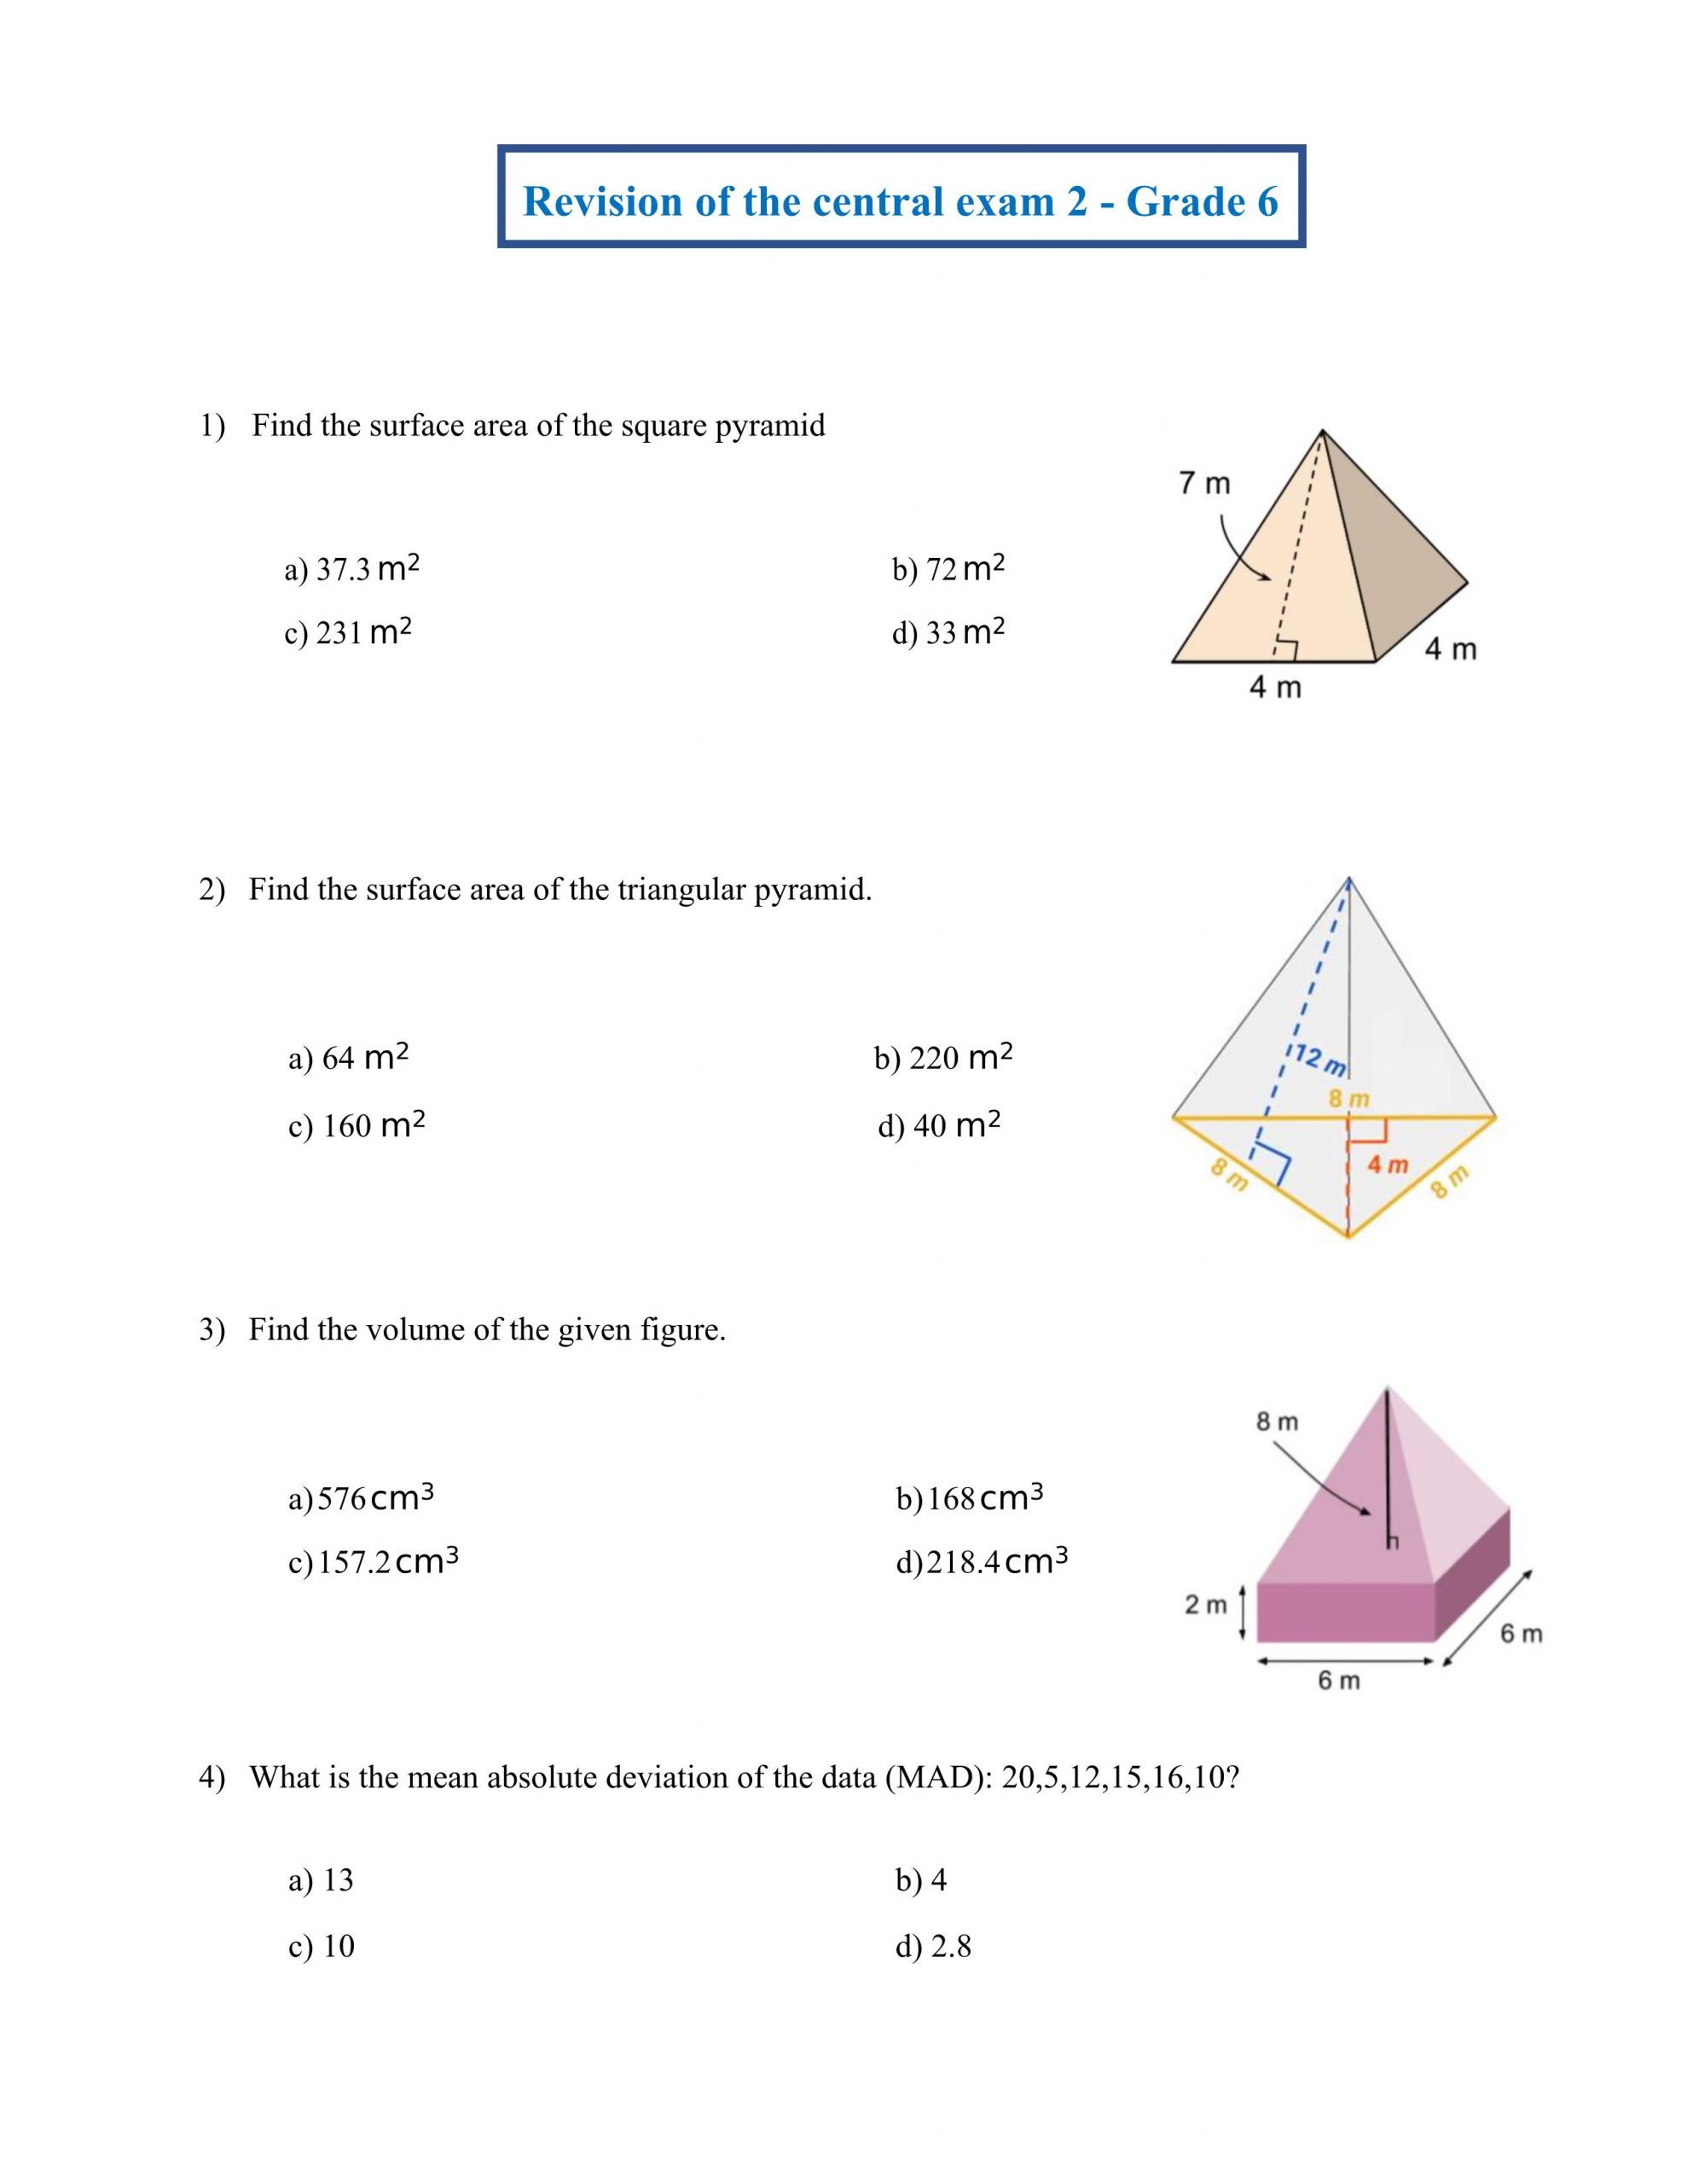 حل أوراق عمل Revision of the central exam 2 بالإنجليزي الصف السادس مادة الرياضيات المتكاملة 